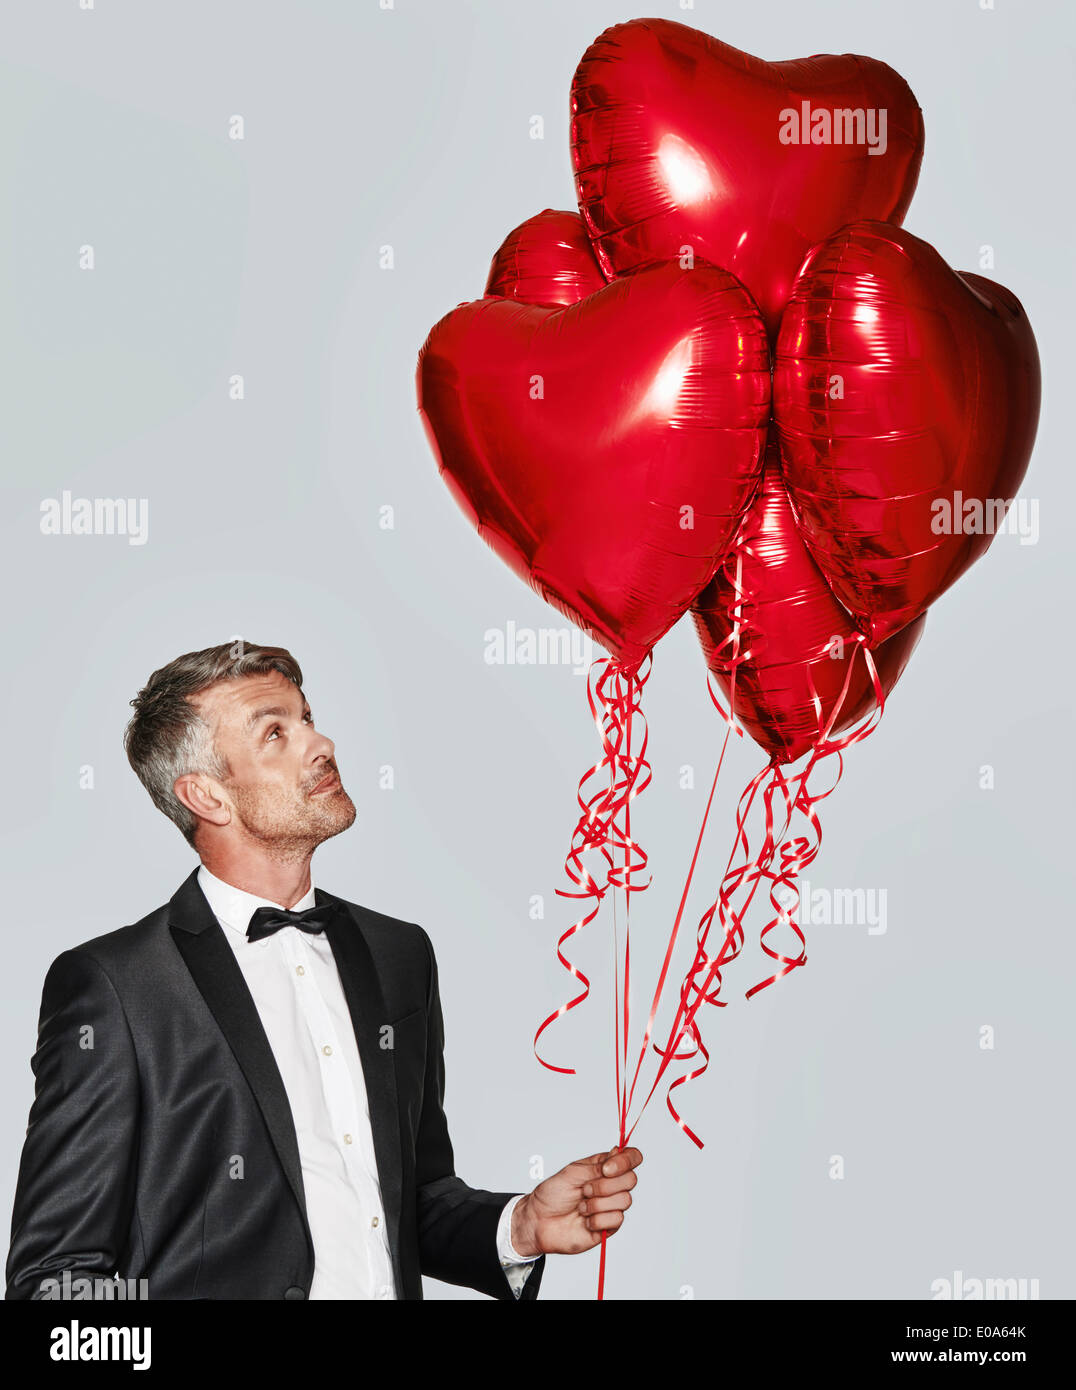 Portrait of man in tuxedo avec des ballons en forme de cœur Banque D'Images